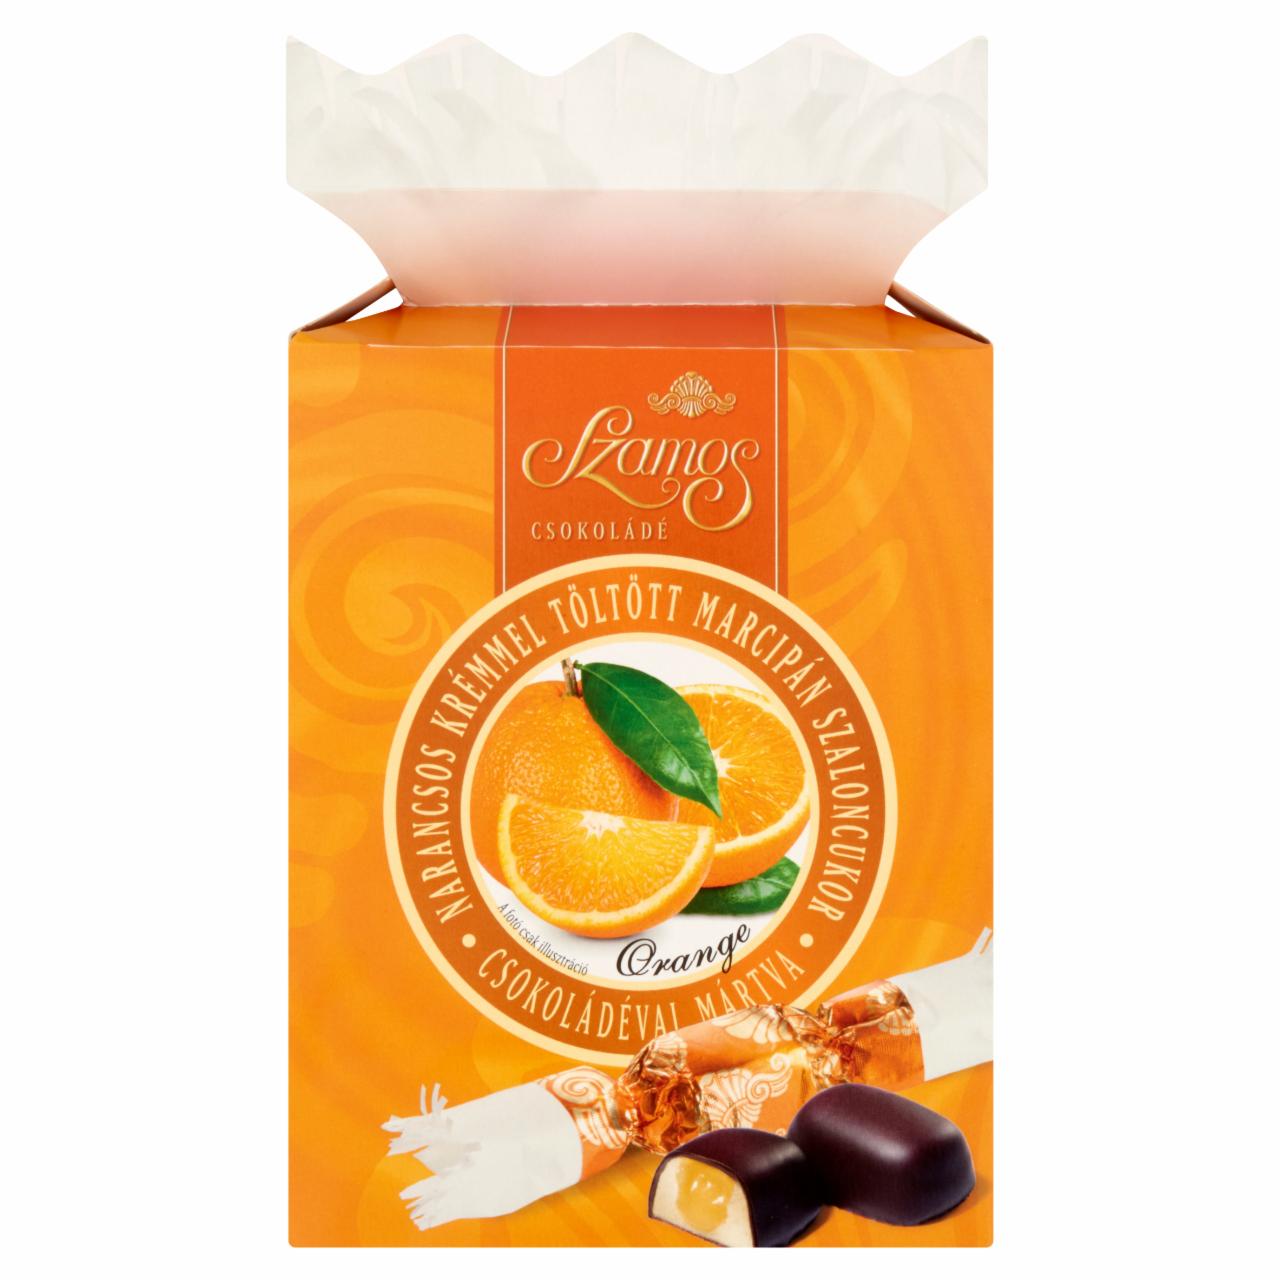 Képek - Szamos narancsos krémmel töltött marcipán szaloncukor csokoládéval mártva 300 g